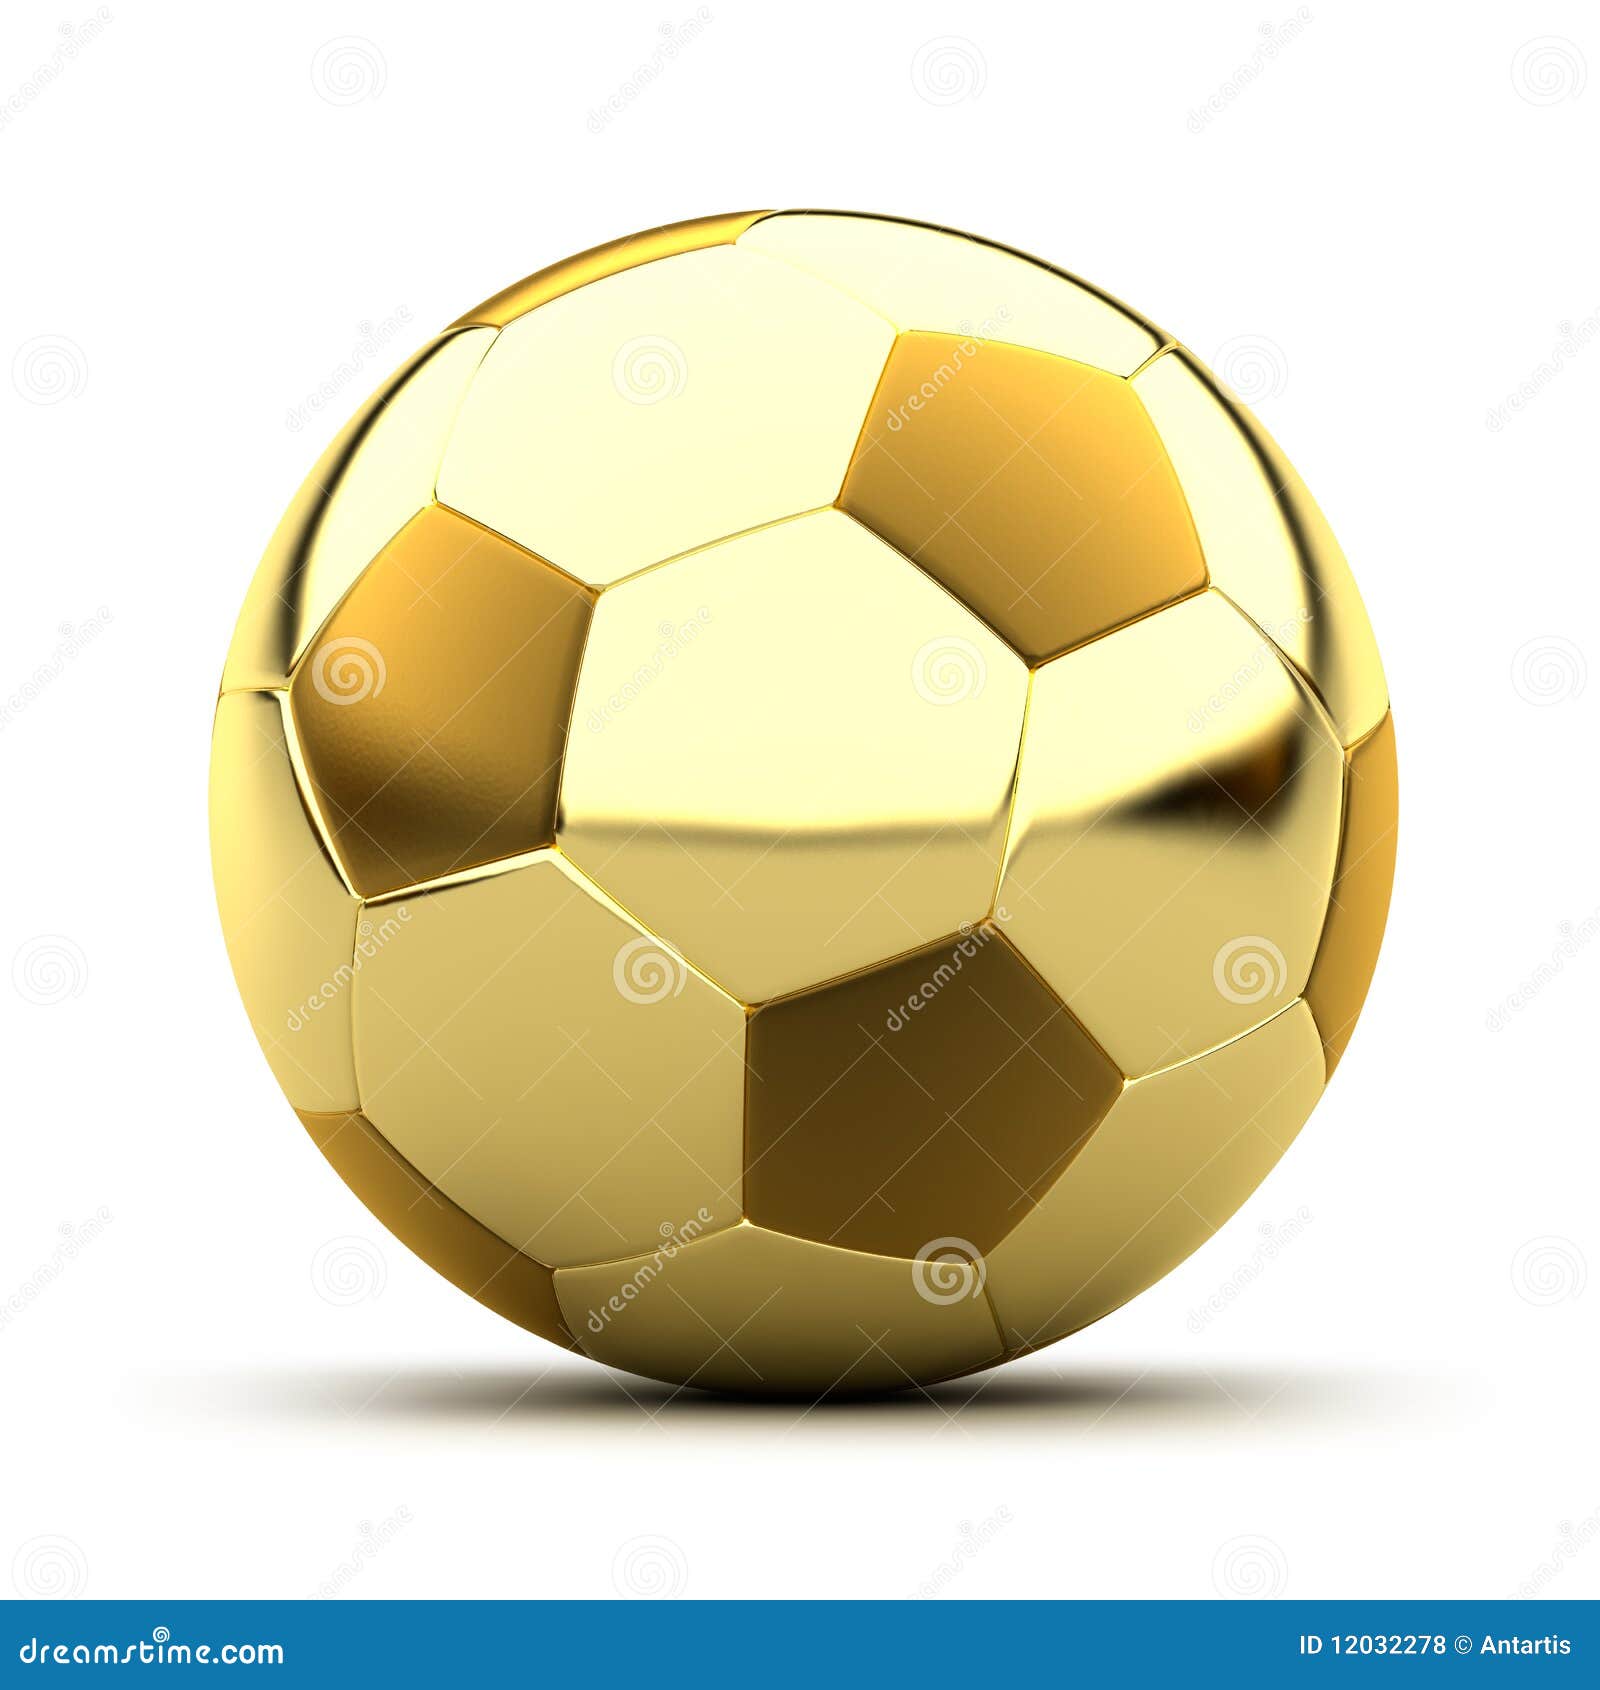 Golden soccer ball stock illustration. Illustration of gold - 12032278